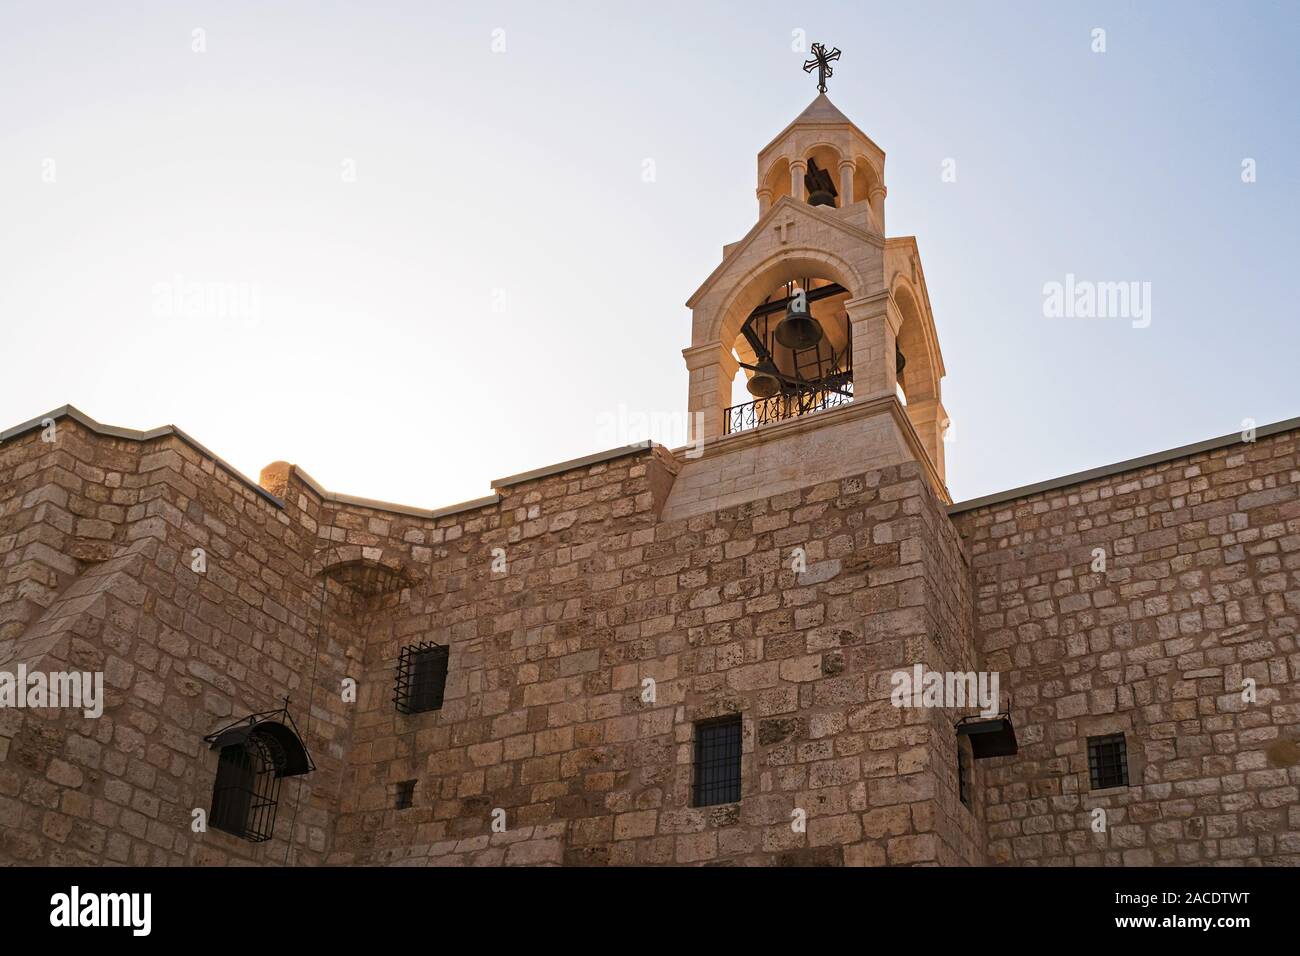 Backlit campanile torre campanaria della chiesa cristiana della natività a Betlemme cisgiordania palestina che mostra la struttura delle pareti in pietra Foto Stock